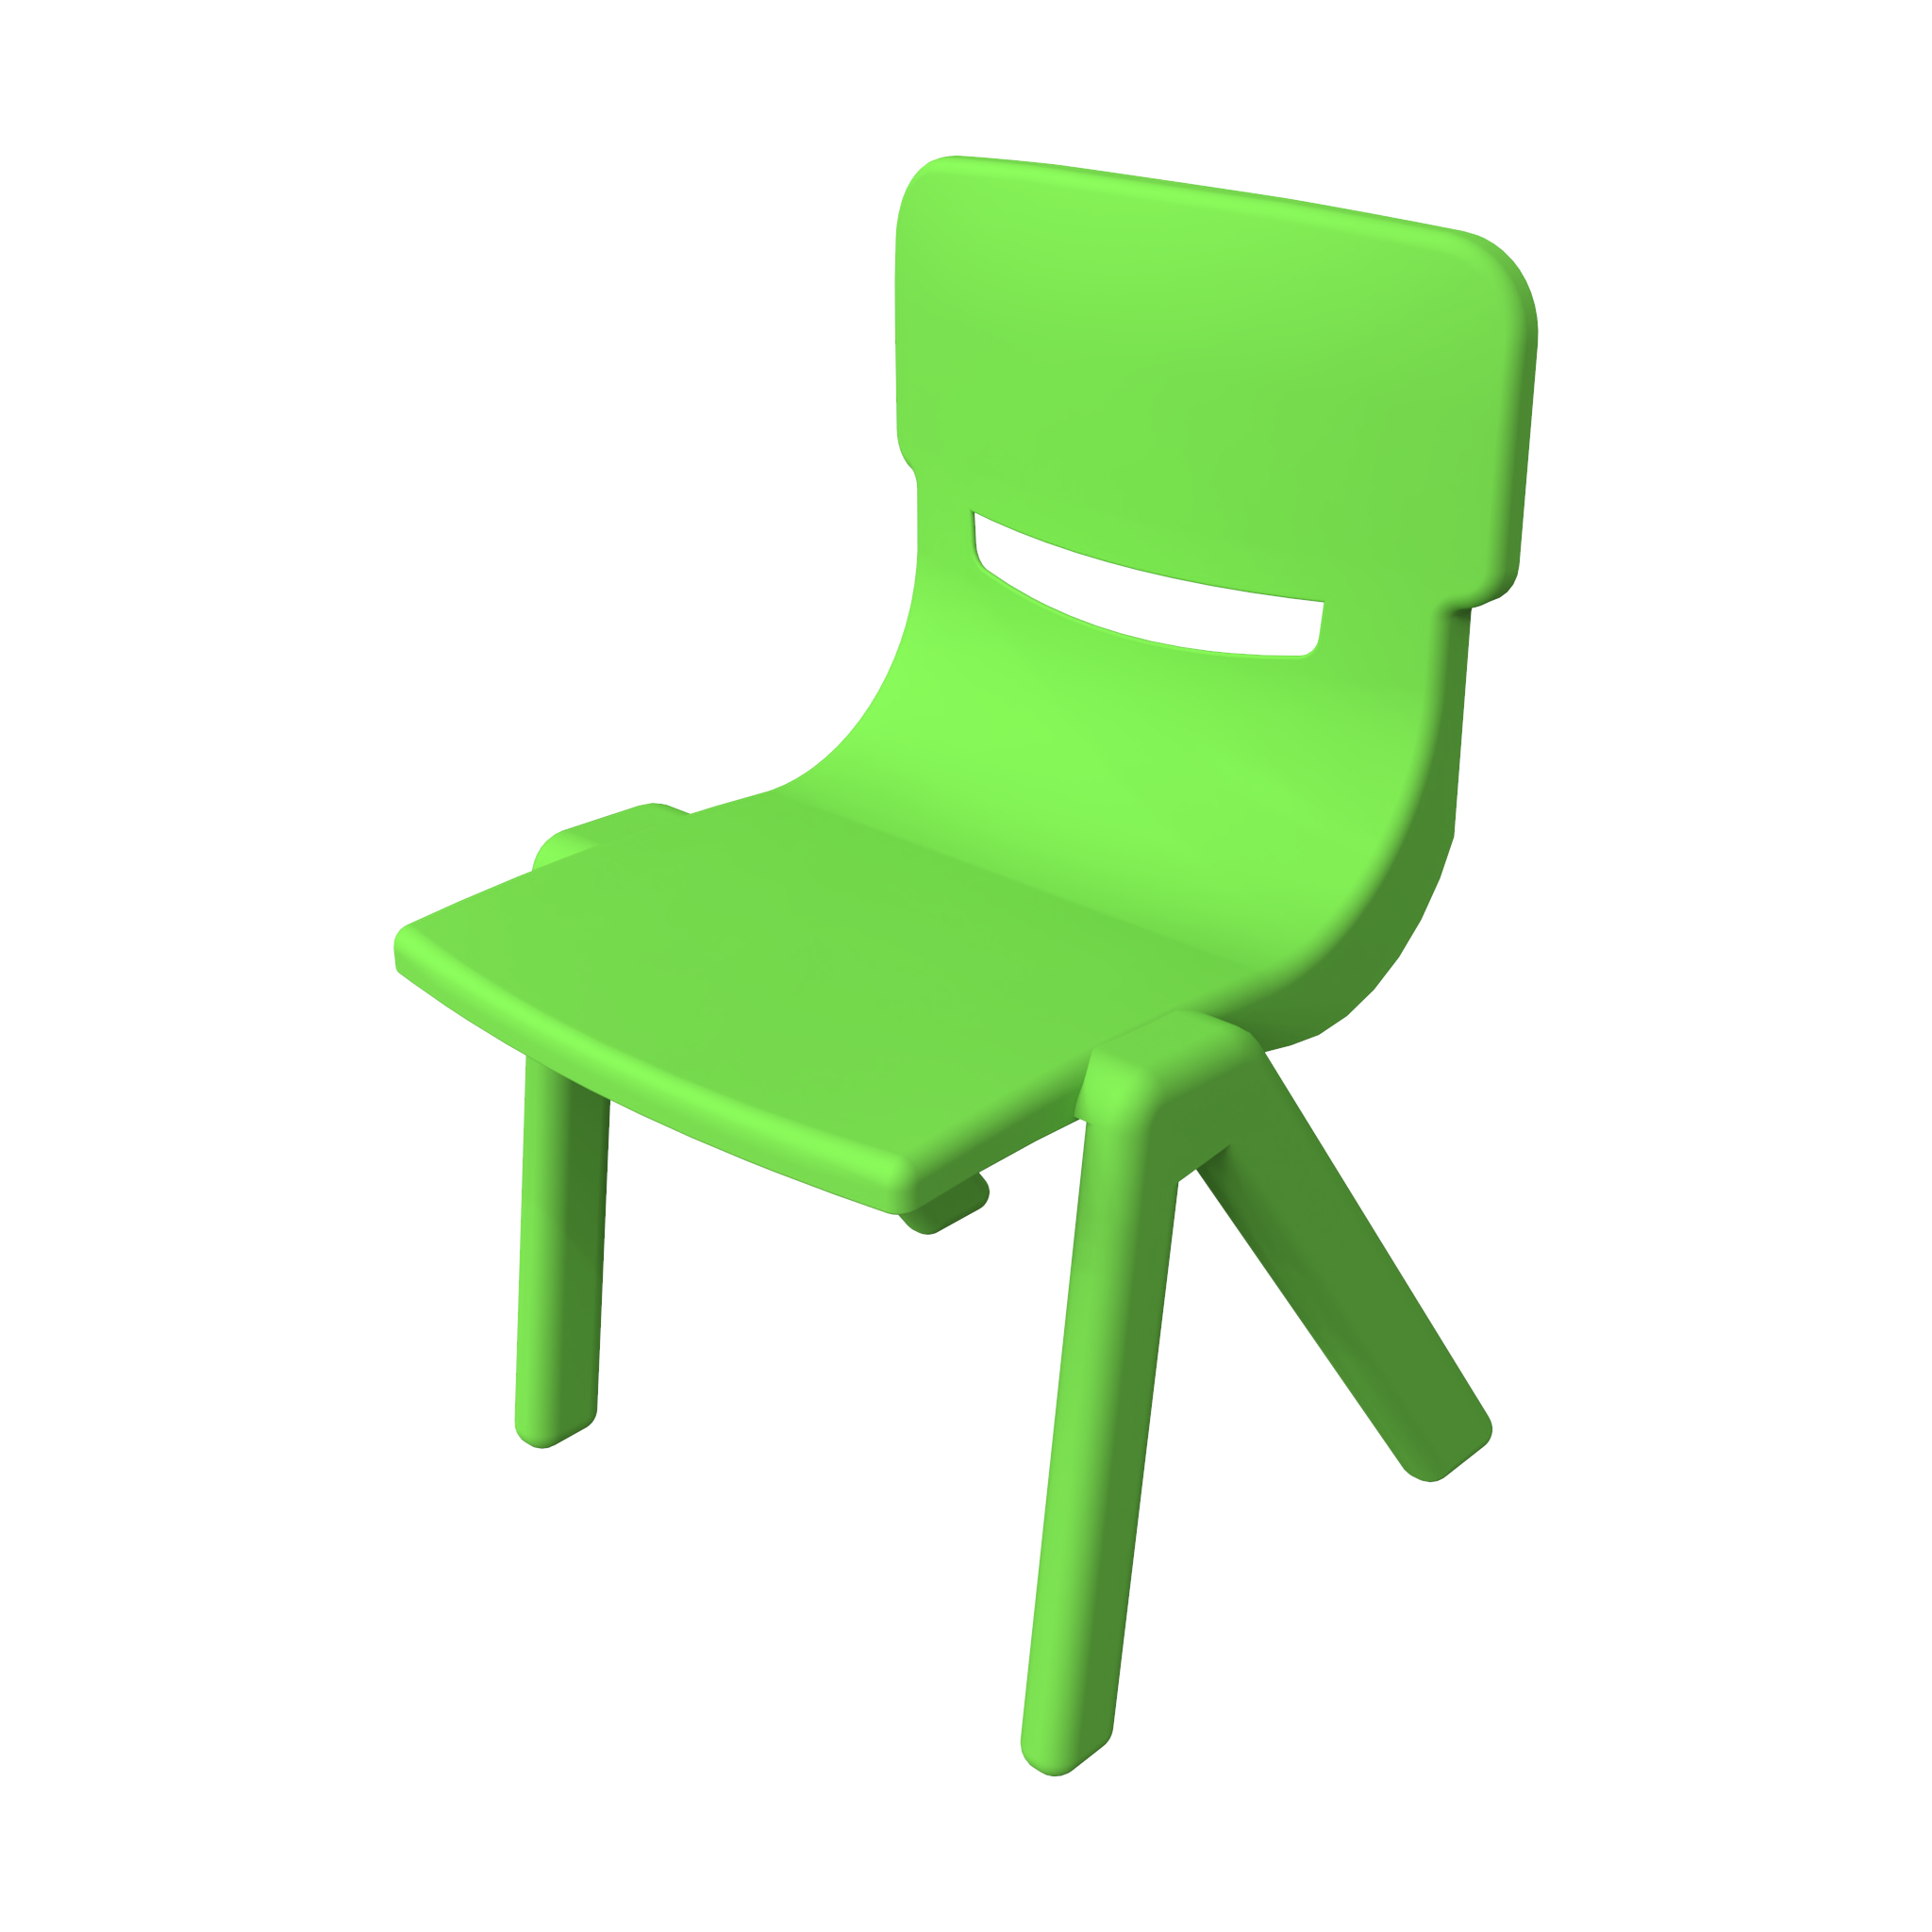 Это изображение показывает детская мебель Fun chair Green